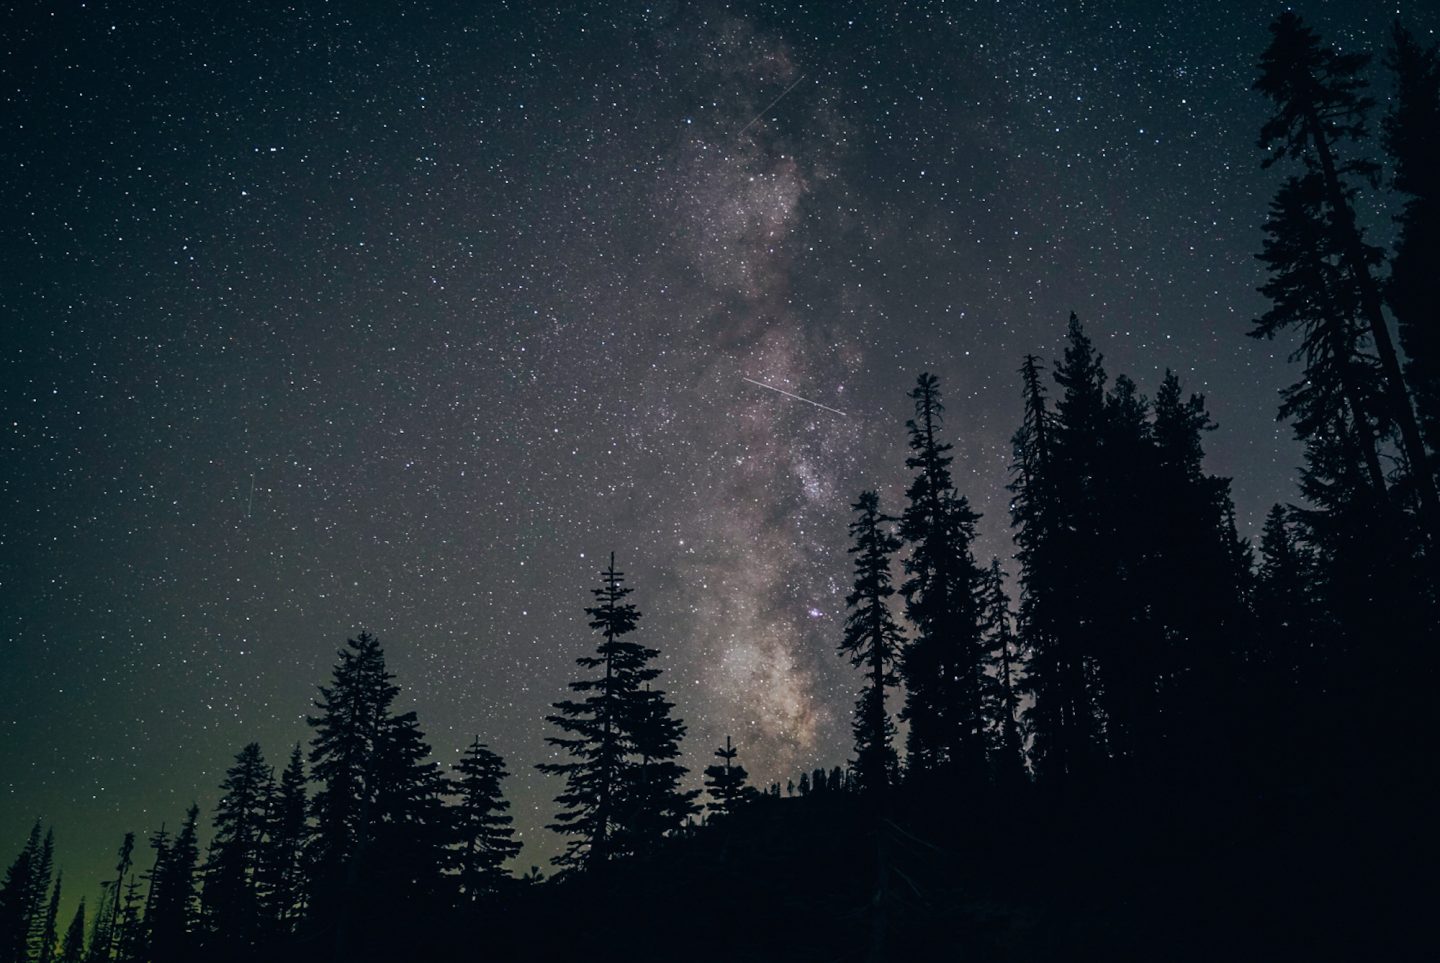 Milky Way Sky in Lassen Volcanic National Park - California